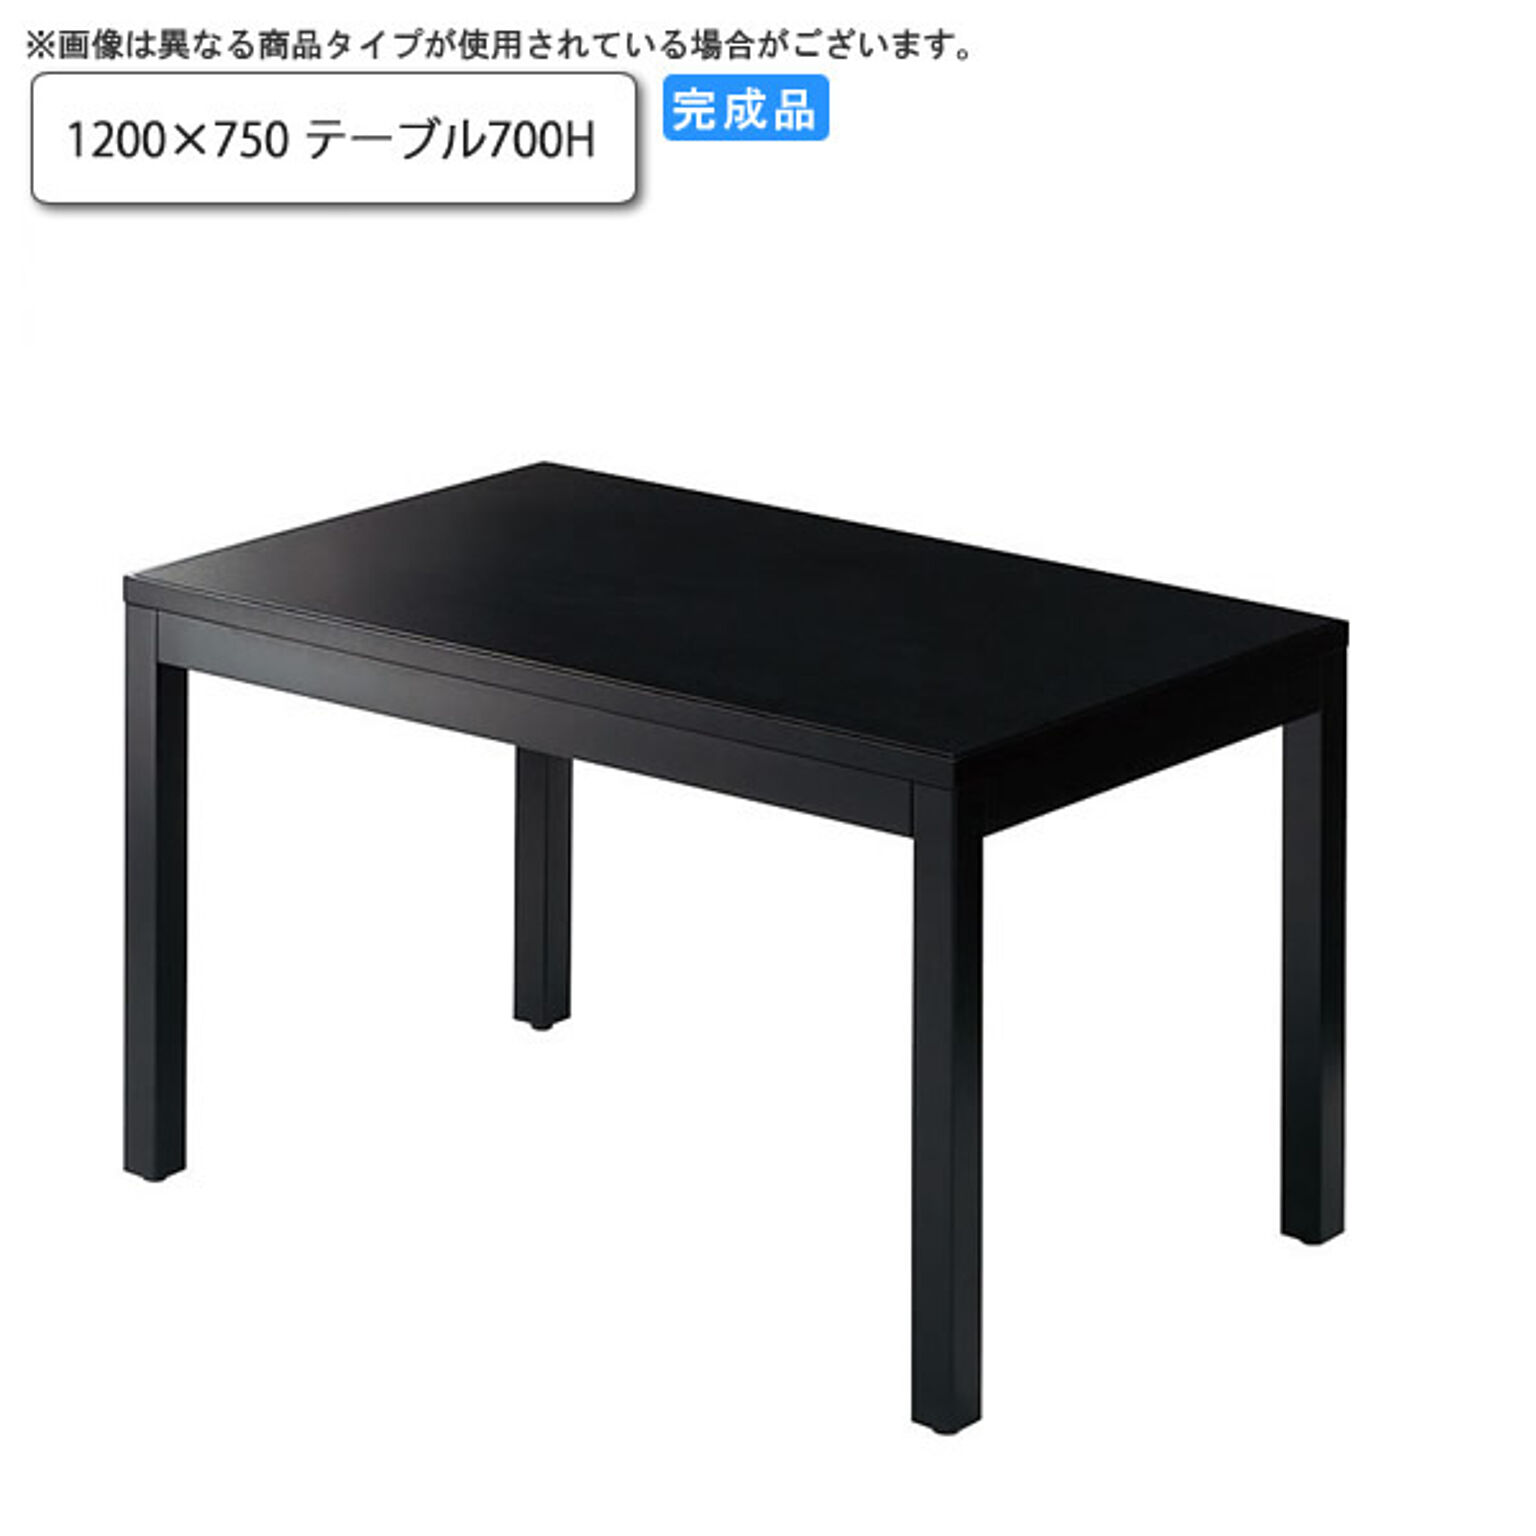 1200×750 テーブル700H ダイニングテーブル 業務用家具：wood japaneseシリーズ★ トリミナ 受注生産 (和風)